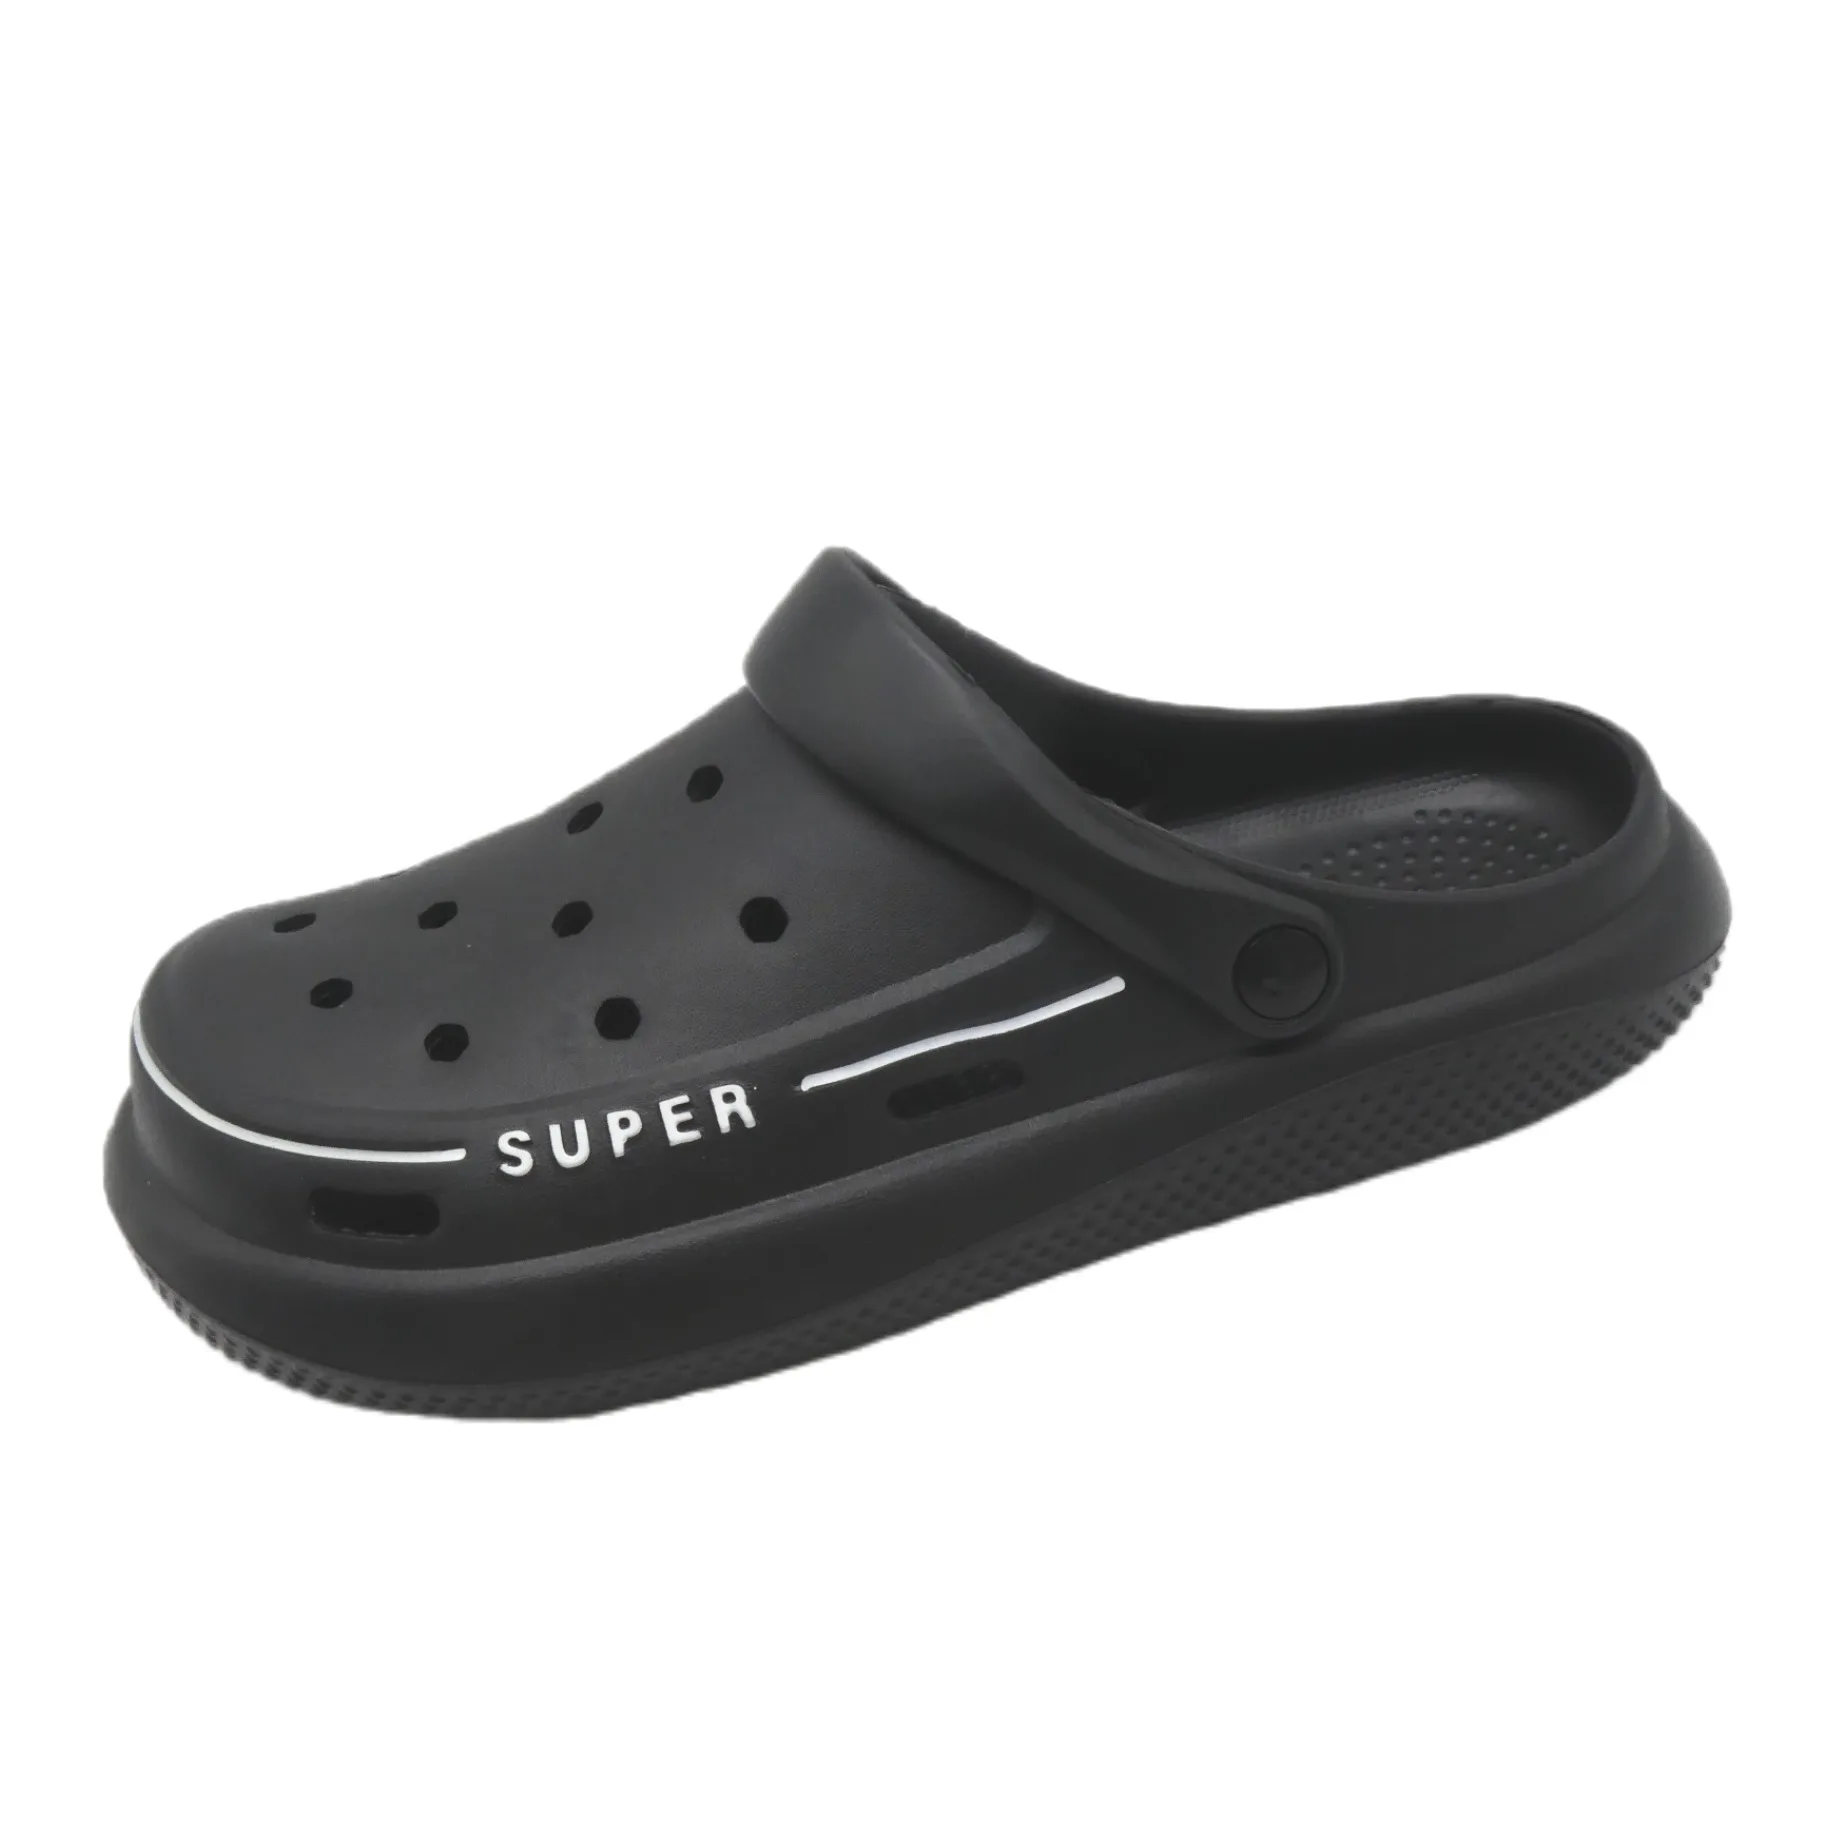 original factory heva custom men slides summer beach slipper for men outdoor garden shoes beach slipper EVA insole unisex sandal